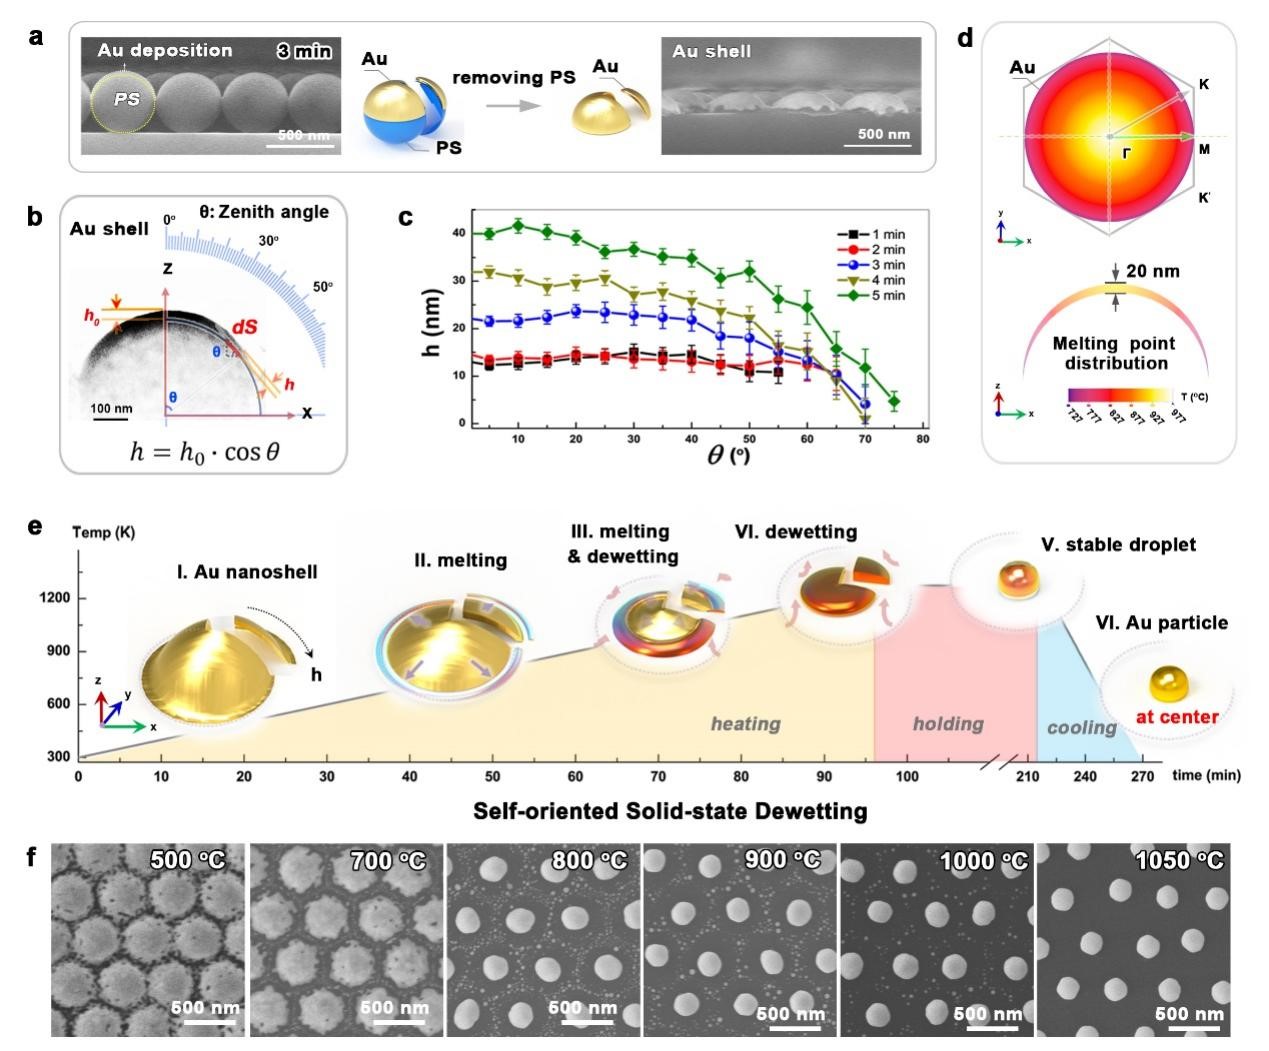 Ilustración de la deshumectación autoconfinada en estado sólido de nanocáscaras de oro depositadas sobre una superficie esférica